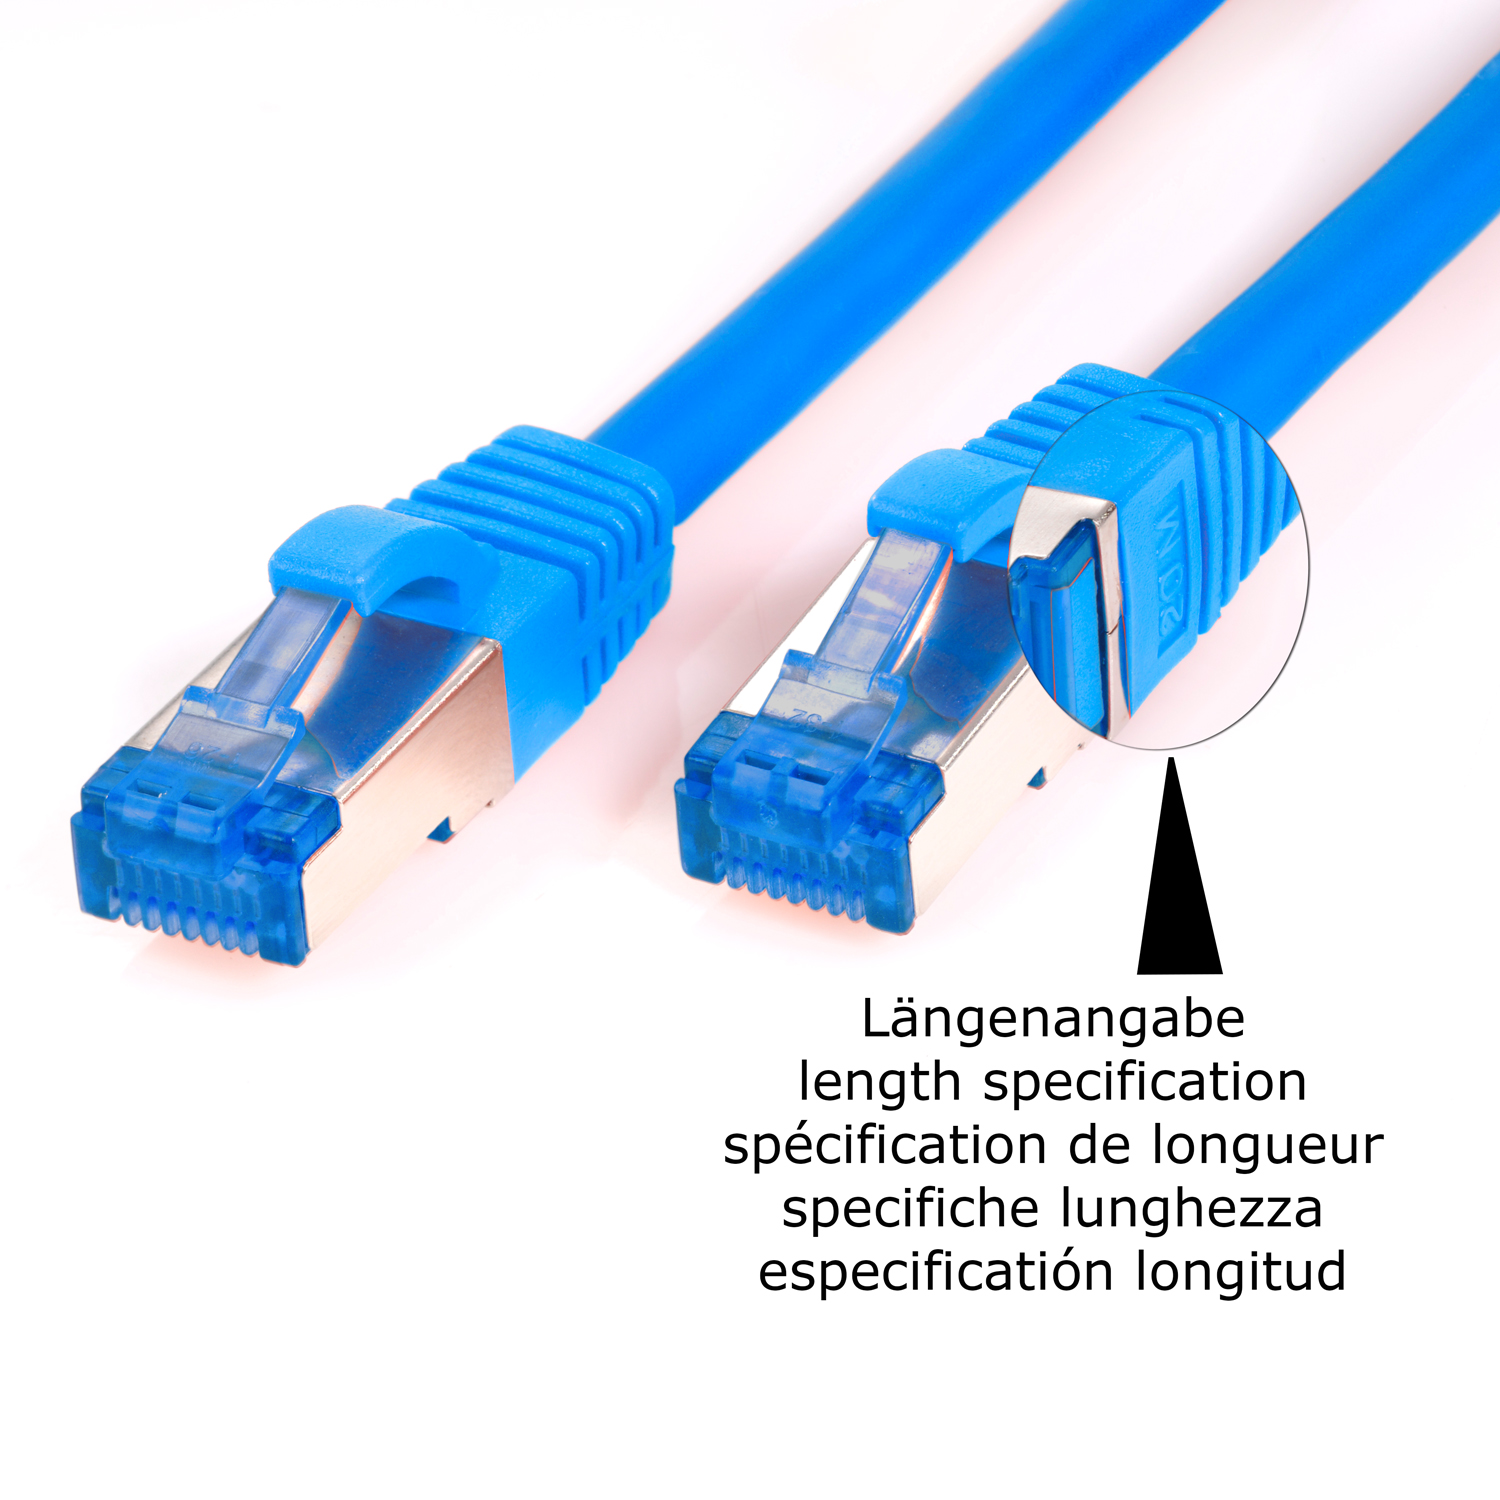 TPFNET 5er Pack 7,5m S/FTP m Patchkabel blau, Netzwerkkabel Netzwerkkabel, 10GBit, / 7,5